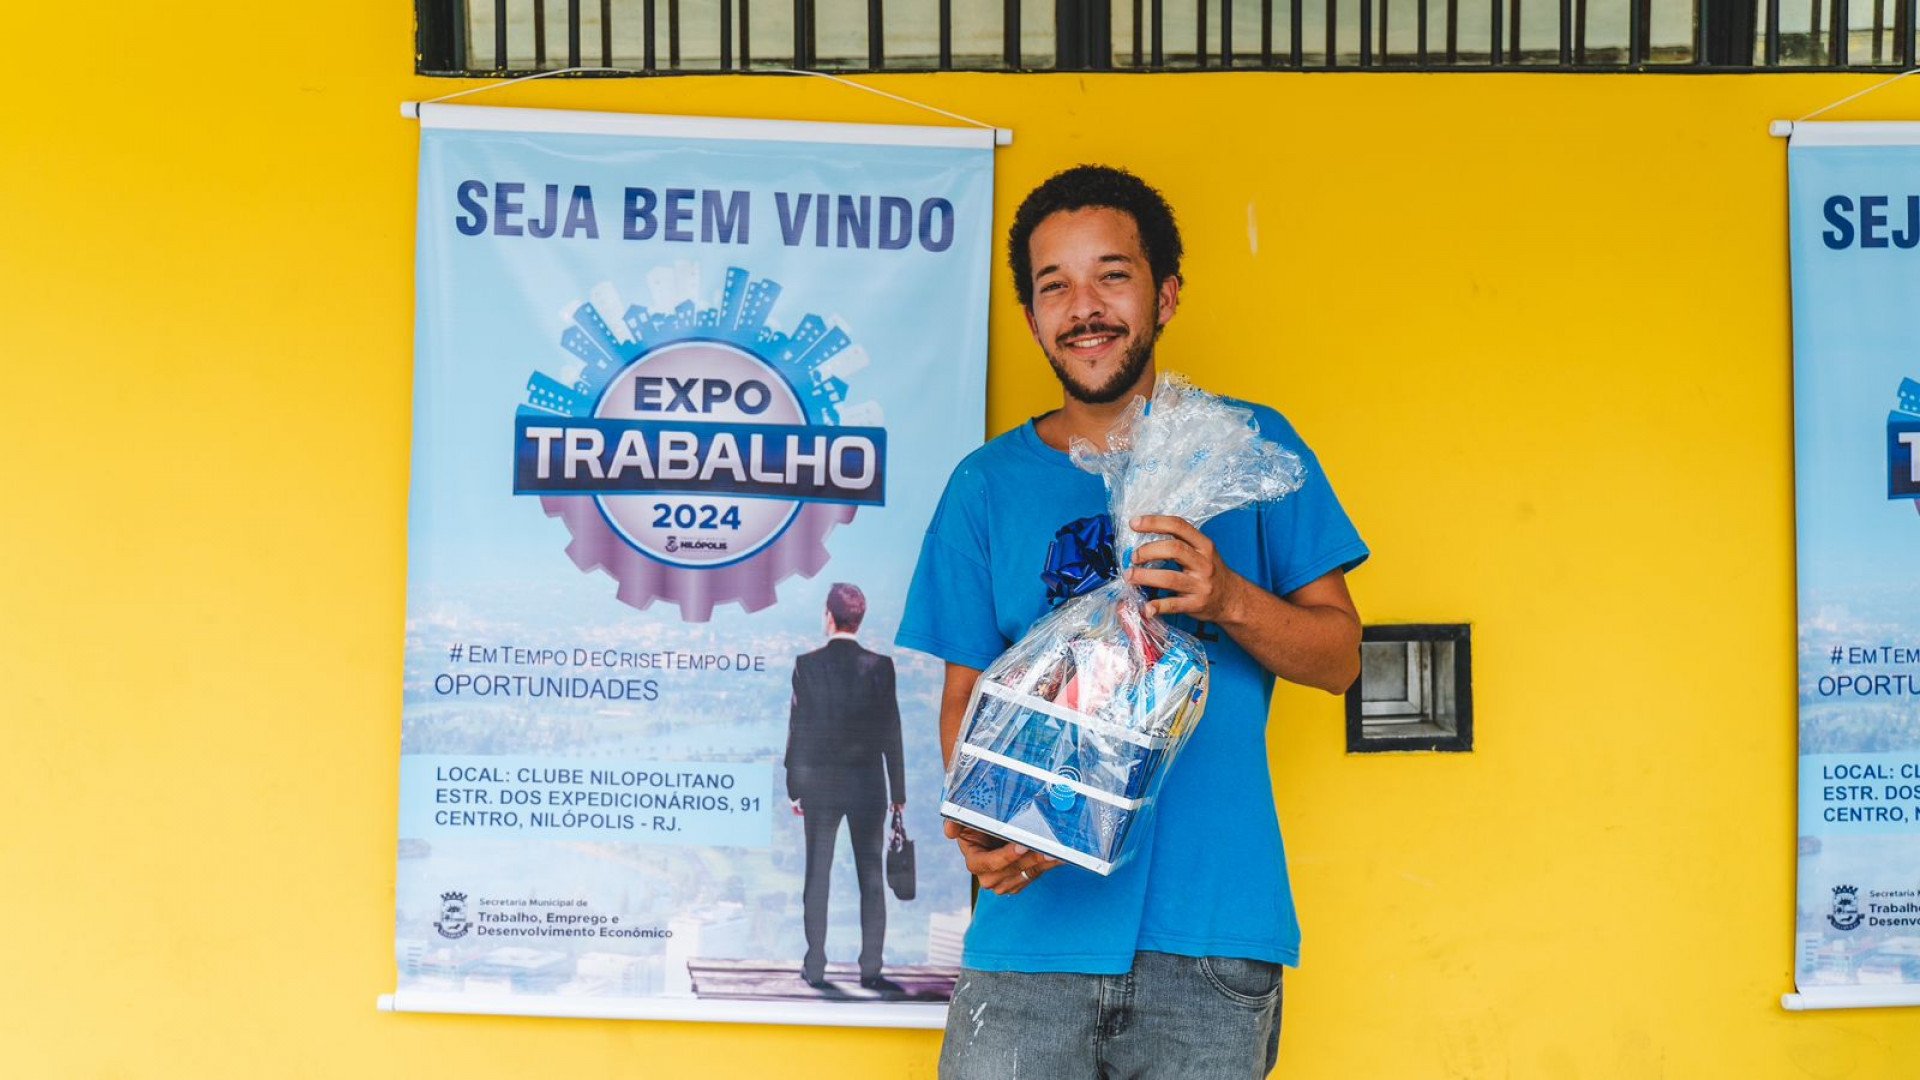 Lucas da Silveira está desempregado há oito meses e foi o primeiro da fila a garantir o atendimento, saindo com duas entrevistas agendadas - Mateus Carvalho / PMN